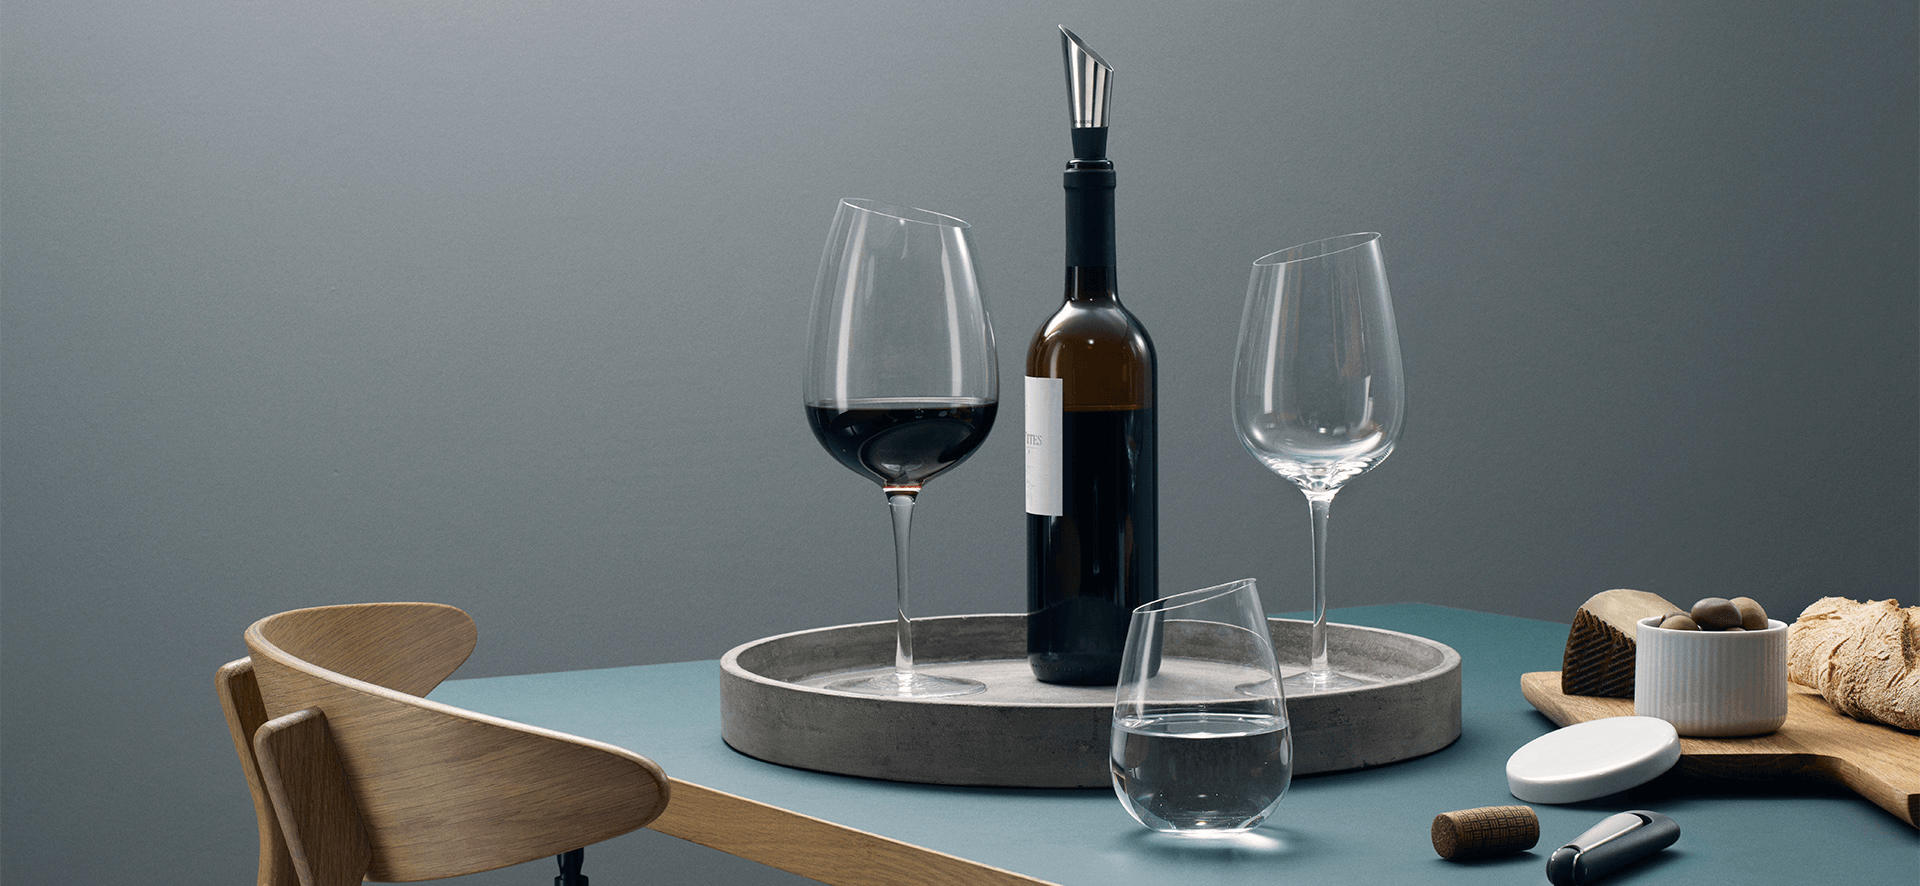 Eva Solo MAGNUM Weinglas Rotweinglas mundgeblasen Limitiert 60 cl - HomeDesign Knaus wir schaffen Inspirationen 